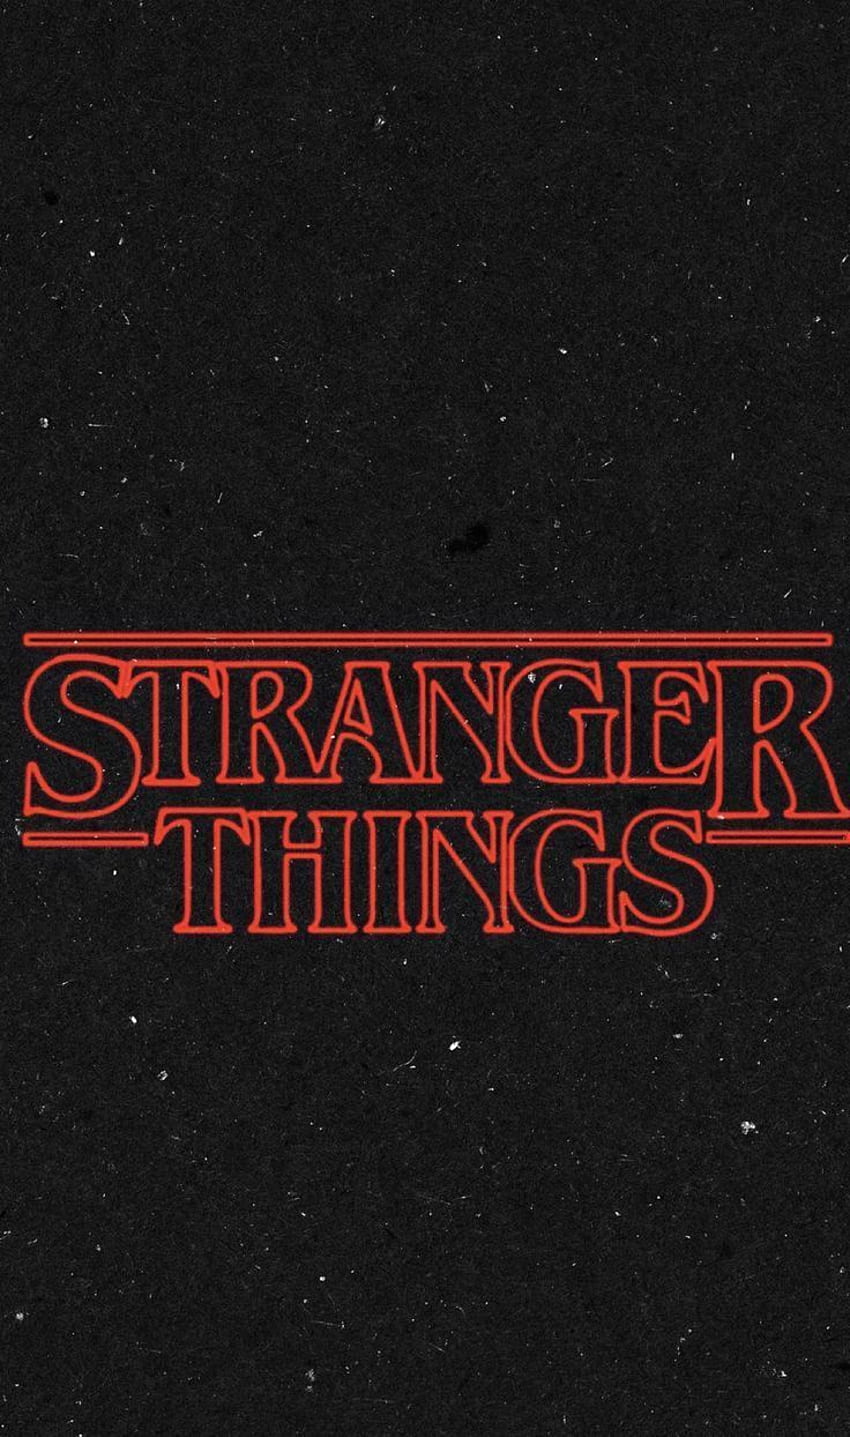 Strangerthings. Stranger things quote, Stranger things logo, Stranger ...